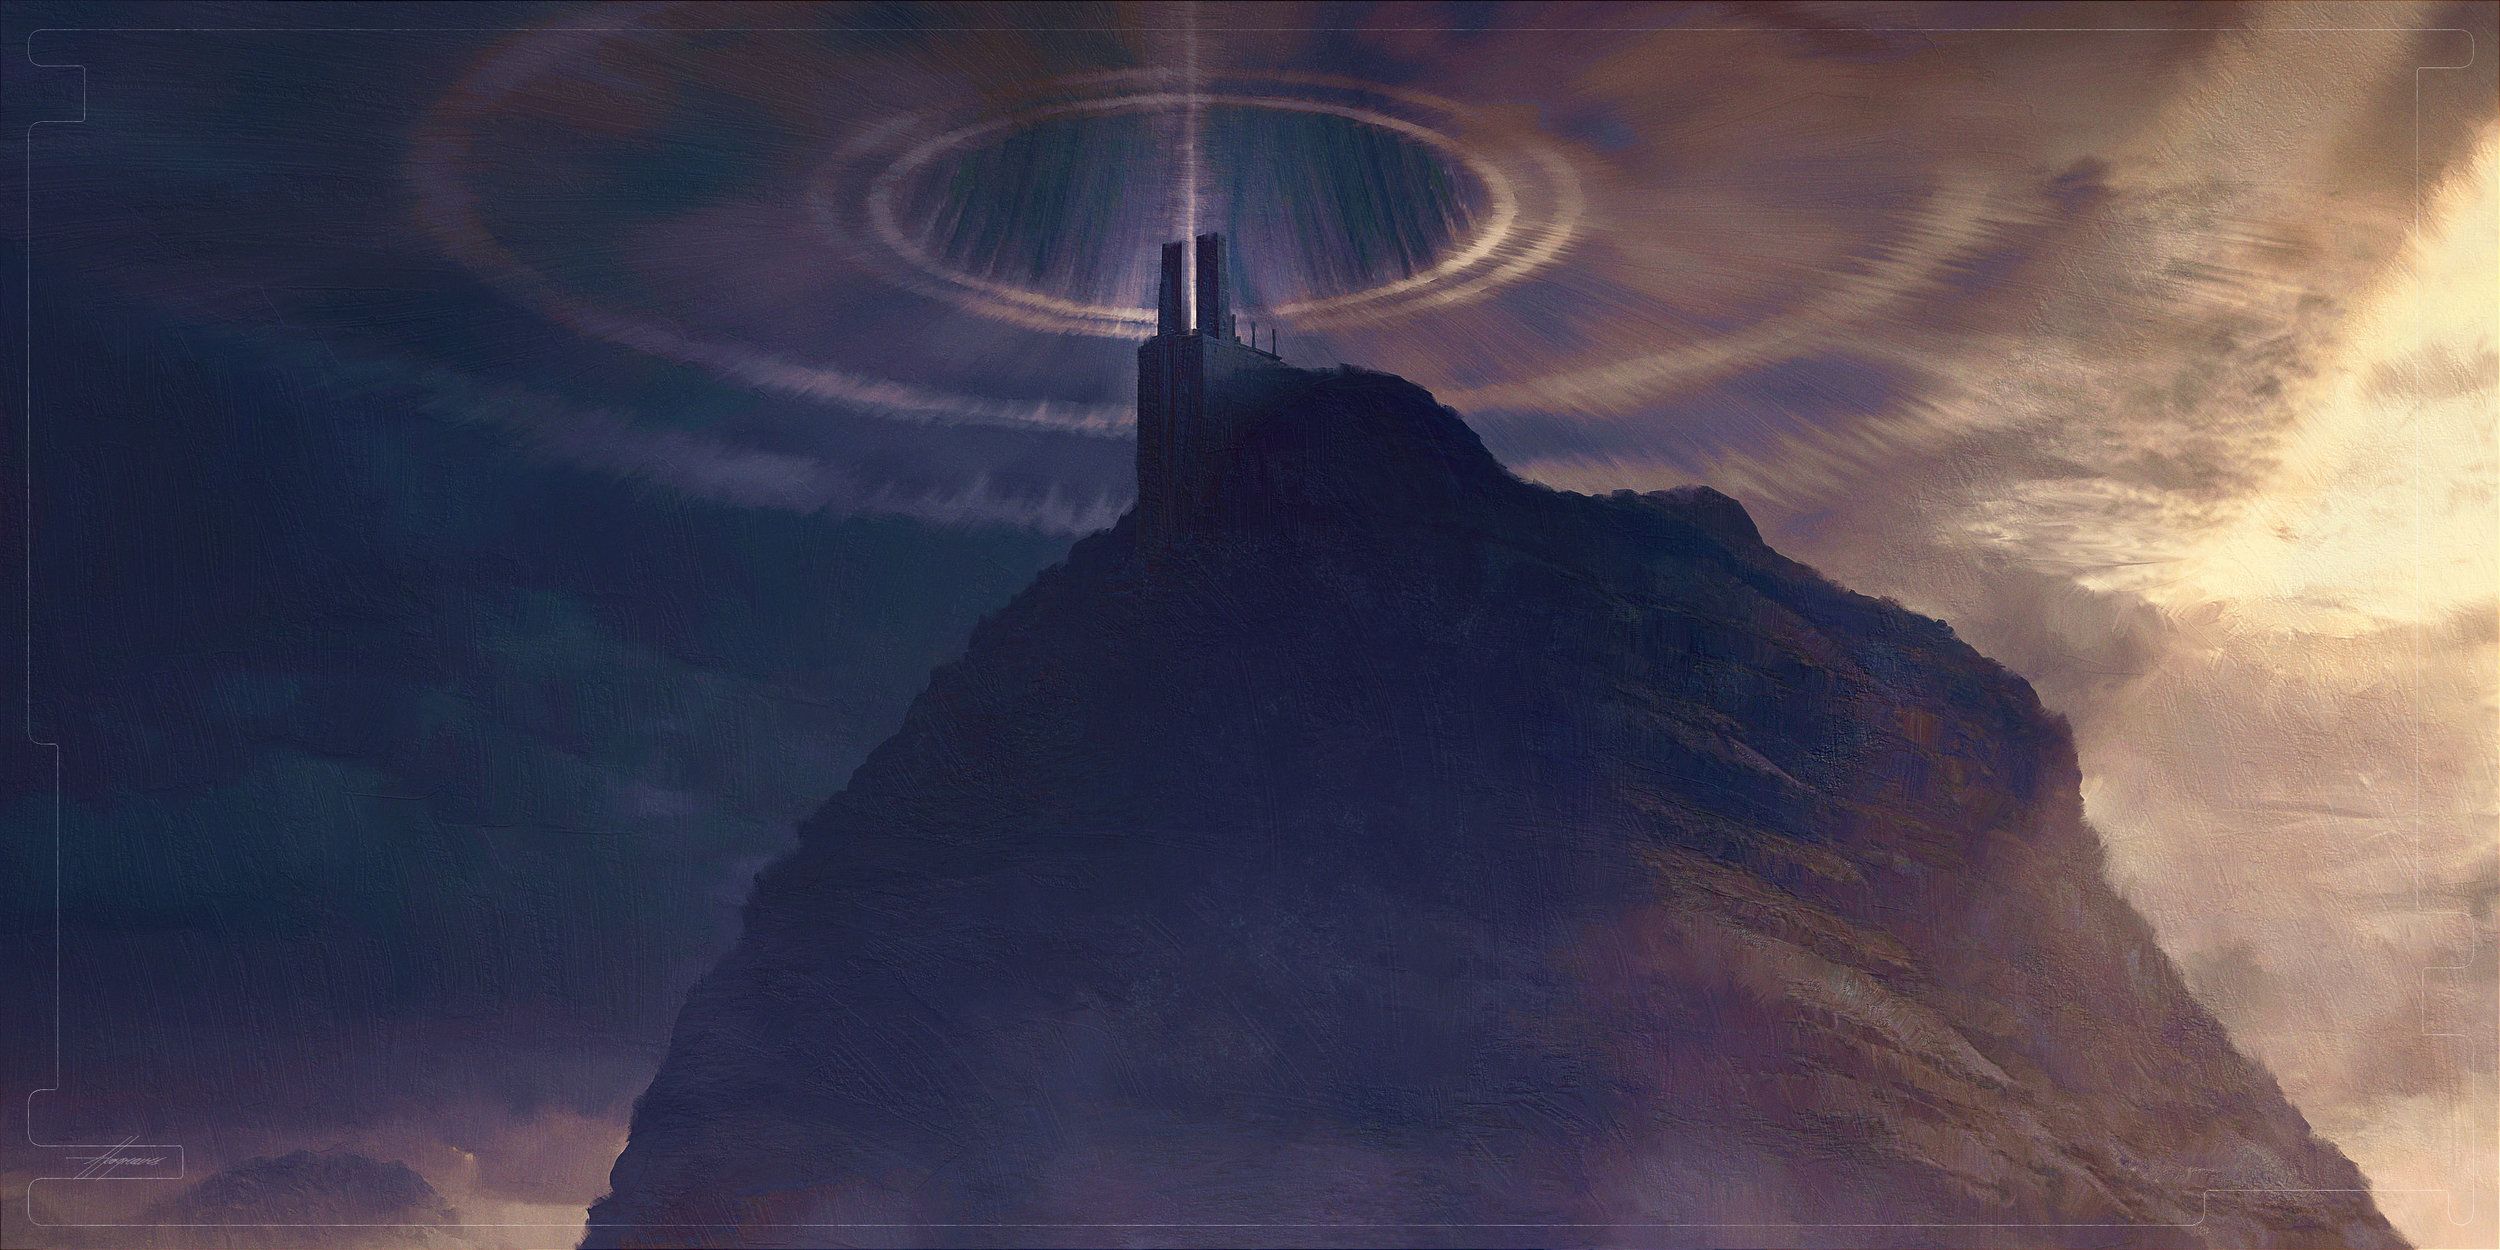 Infinity War concept art - Vormir temple